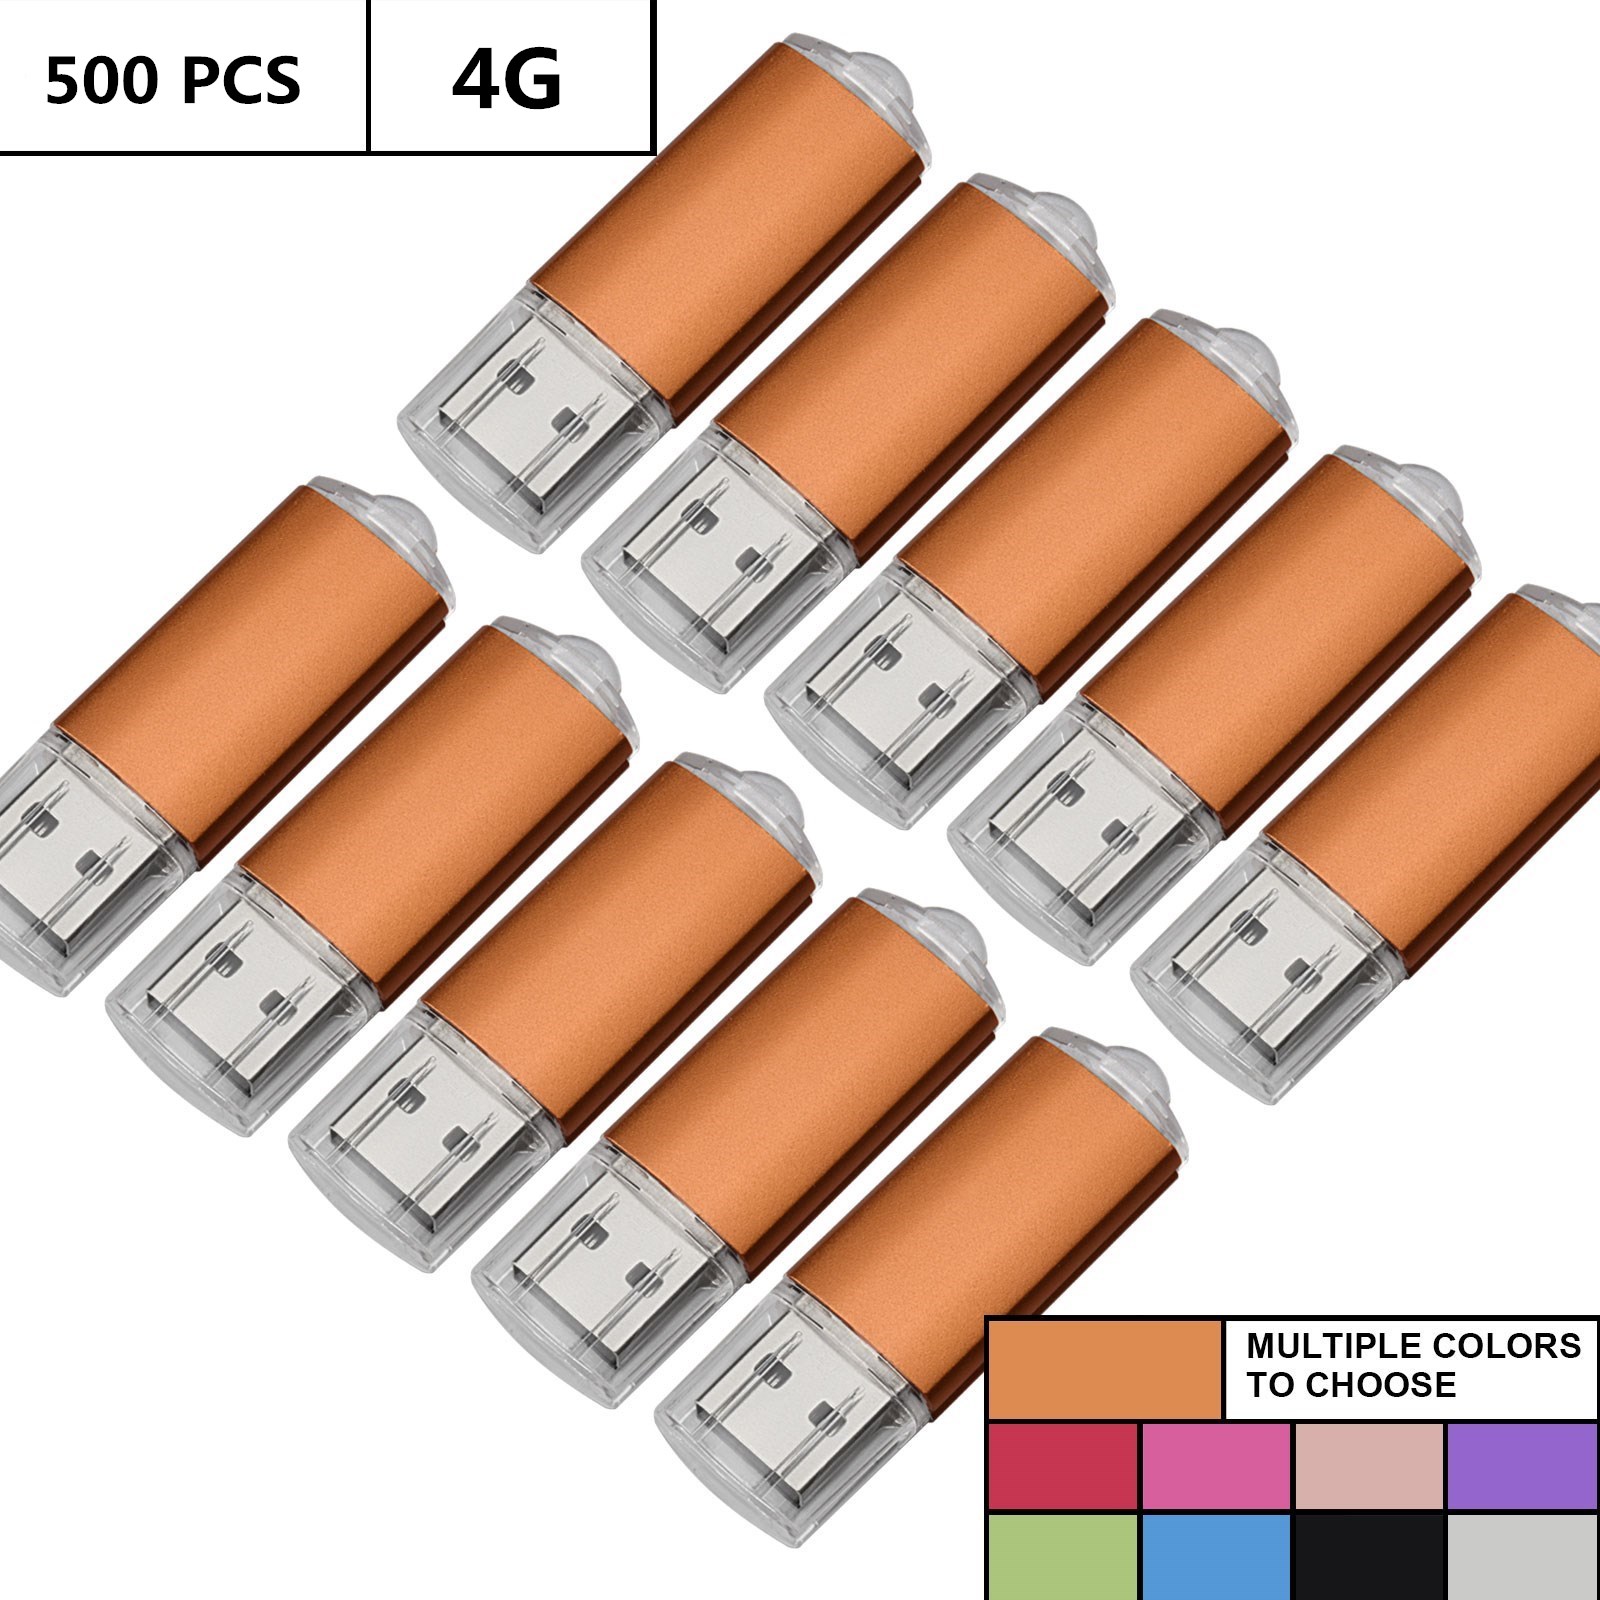 Großhandel Bulk 500pcs 4 GB USB -Flash -Laufwerke Rechteck -Flash Pen -Laufwerke Speichersticks Daumenspeicher für Computer MacBook LED -Anzeige u Festplatte